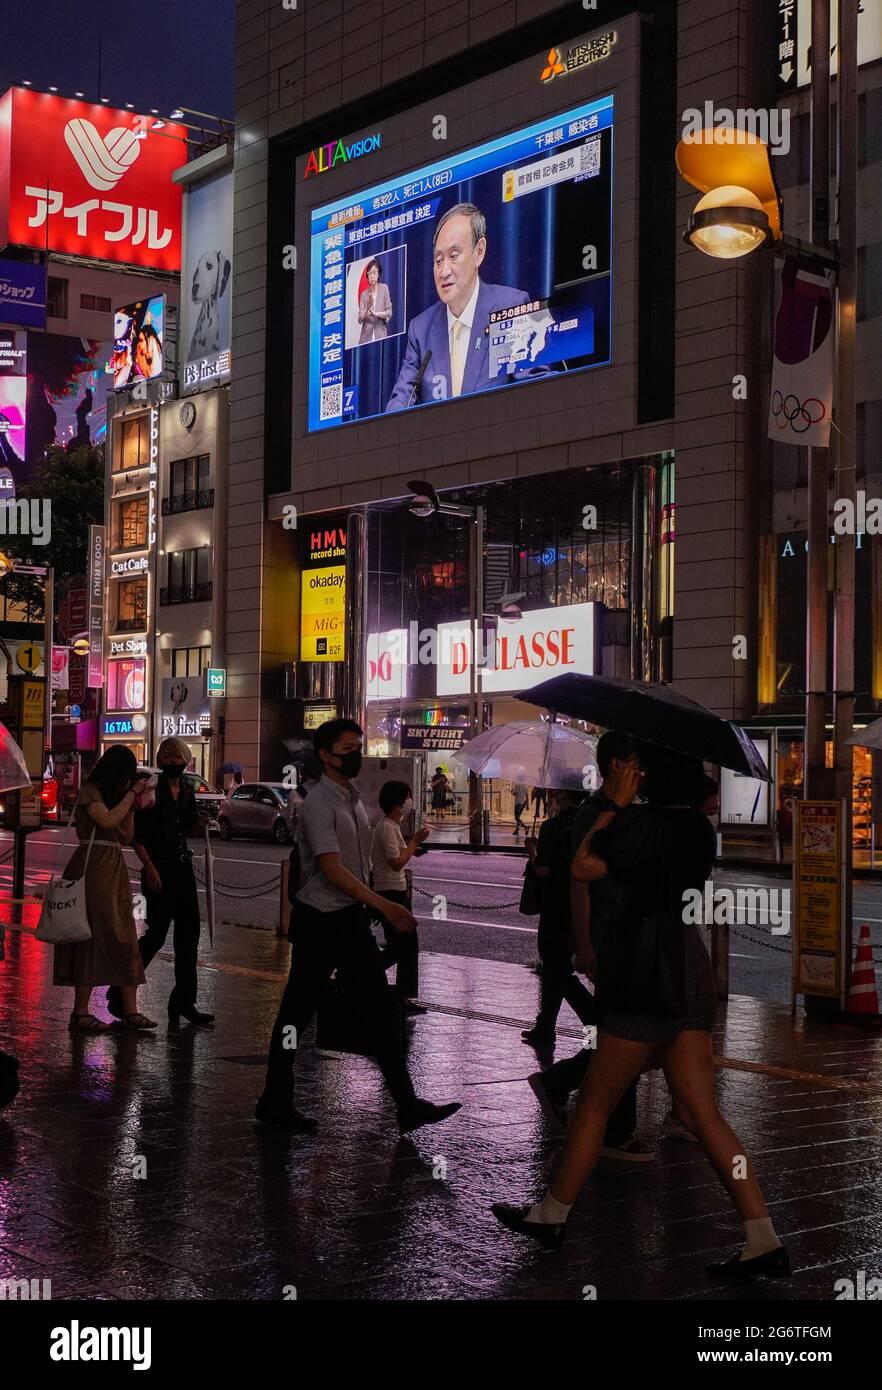 (210708) -- TOKYO, le 8 juillet 2021 (Xinhua) -- le Premier ministre japonais Yoshide Suga est vu sur grand écran alors qu'il annonce un nouvel état d'urgence à Tokyo, au Japon, le 8 juillet 2021. Le gouvernement japonais a décidé jeudi de placer la capitale Tokyo sous le quatrième état d'urgence sur la COVID-19, couvrant la durée des Jeux Olympiques, dans un effort pour enrayer une récente vague d'infections. (Photo de Christopher Jue/Xinhua) Banque D'Images